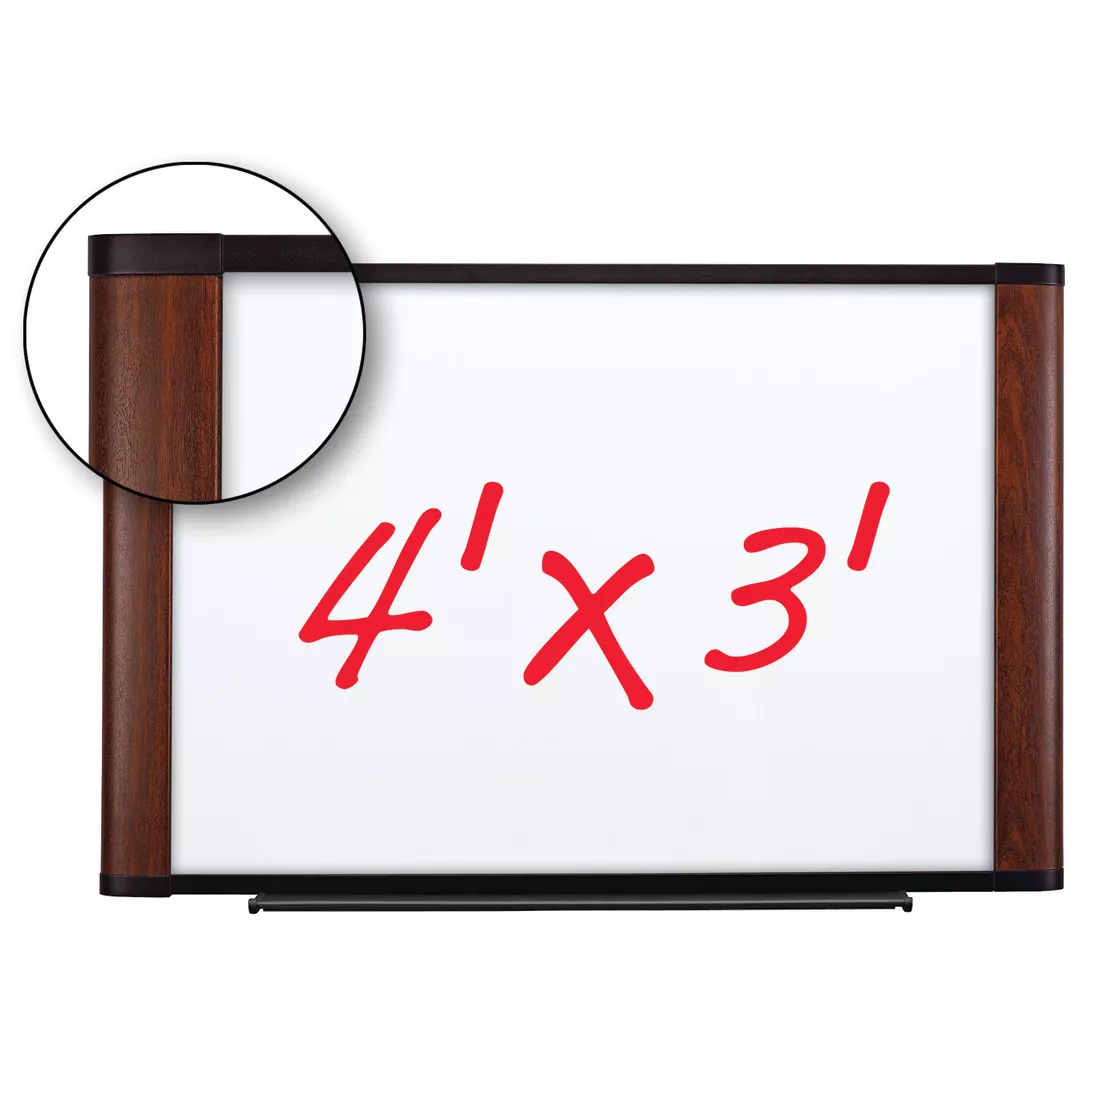 3M™ Melamine Dry Erase Board M4836MY, 48 in x 36 in x 1 in (121.9 cm x
91.4 cm x 2.5 cm) Mahogany Finish Frame